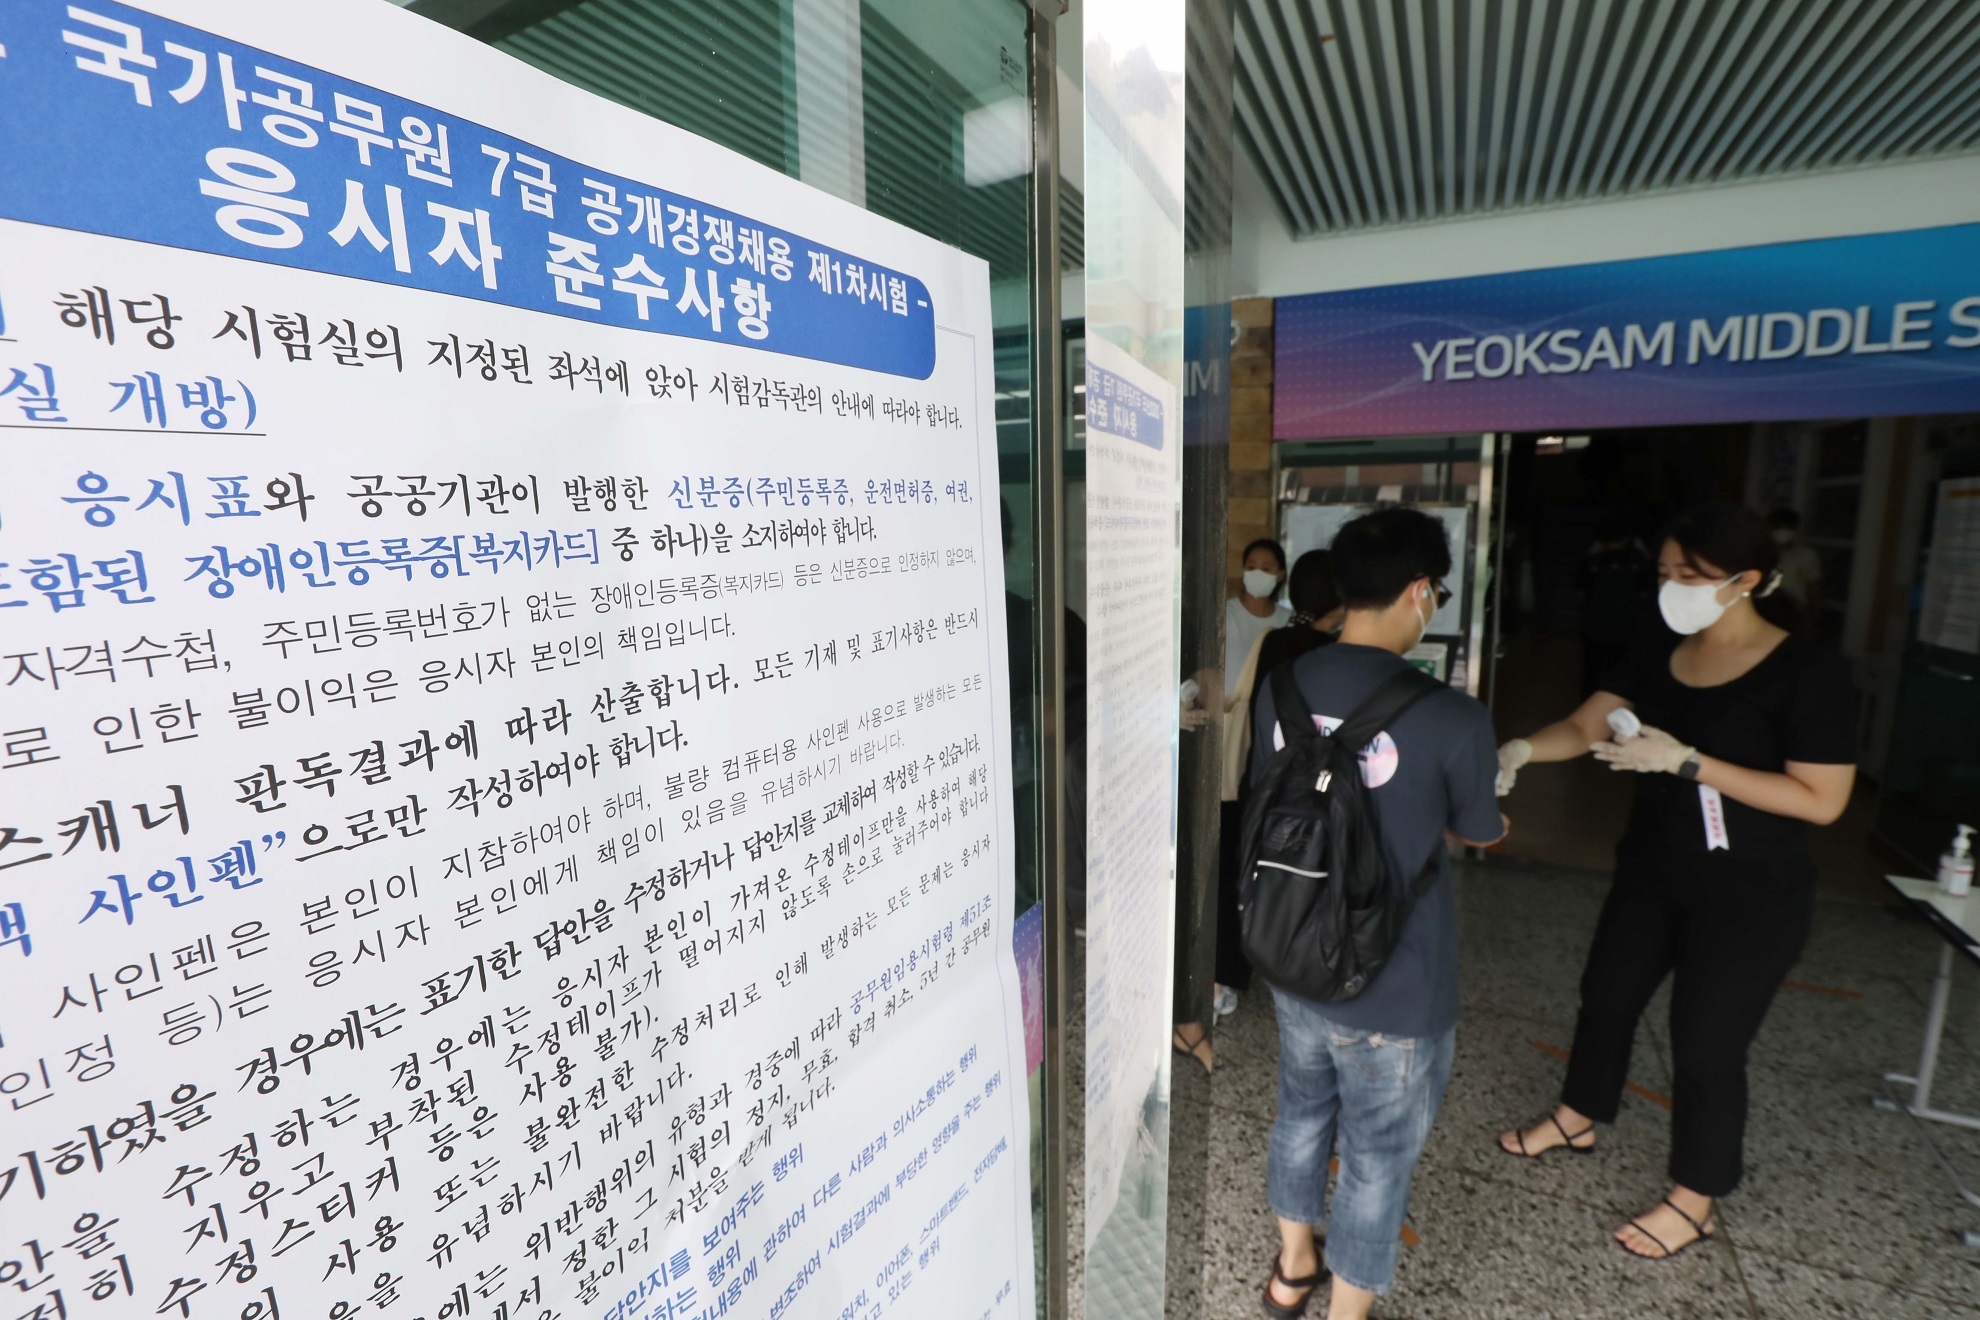 23일 국가공무원 7급 공개경쟁채용 제1차 시험장인 서울 강남구 소재 한 학교에 응시생이 입구에서 방역절차를 안내 받고 있는 모습